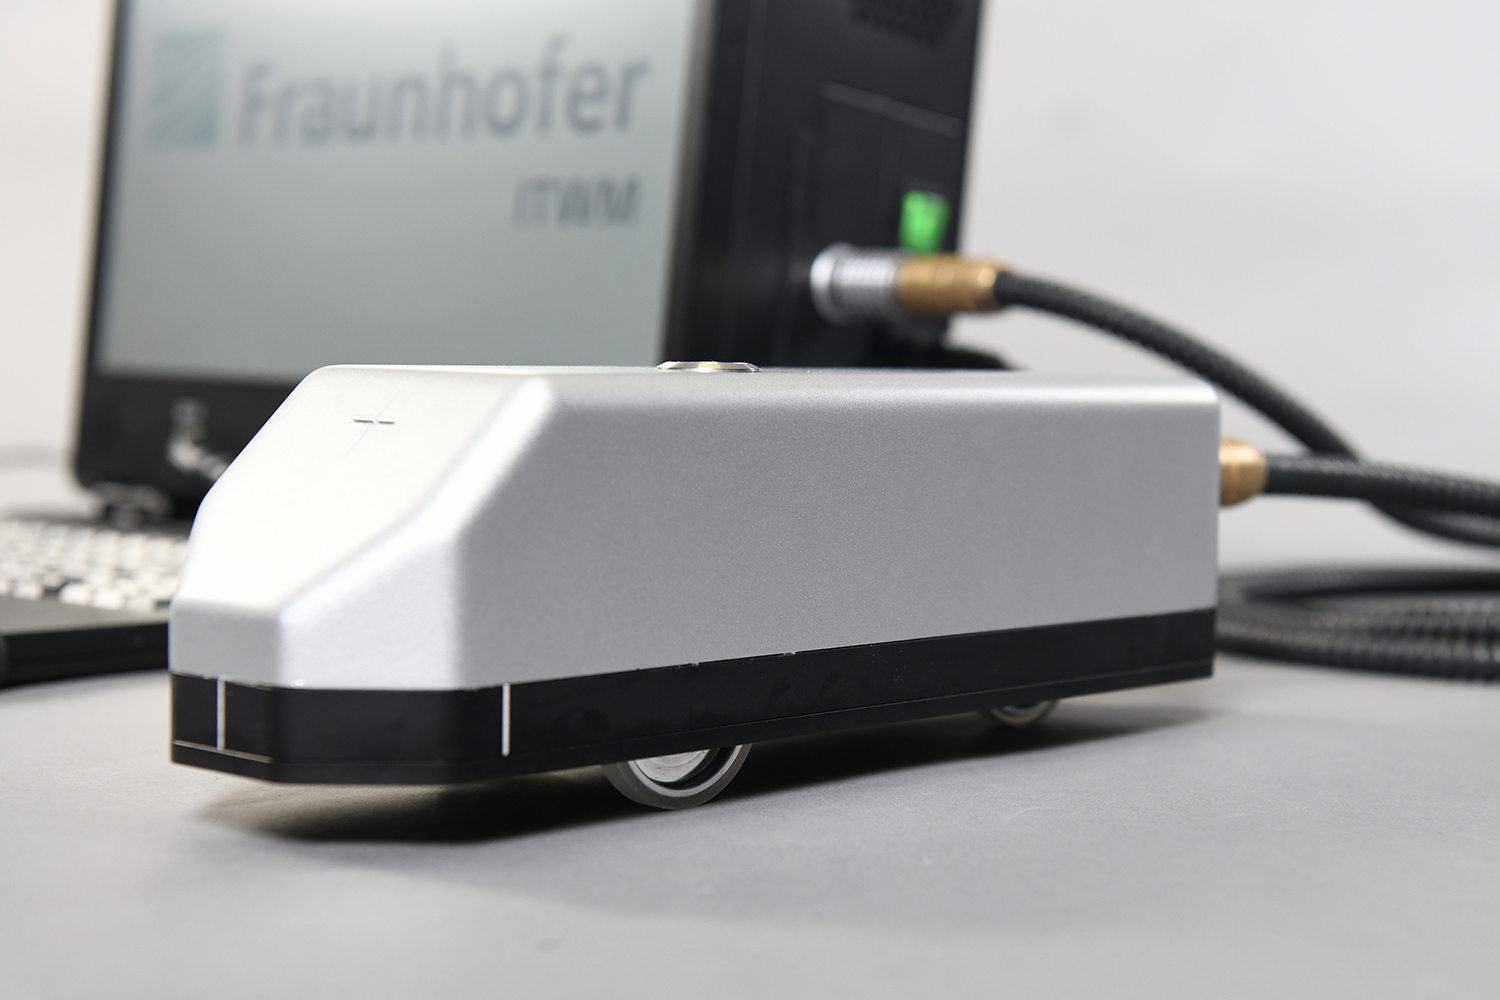 Mobiler Terahertz-Handscanner